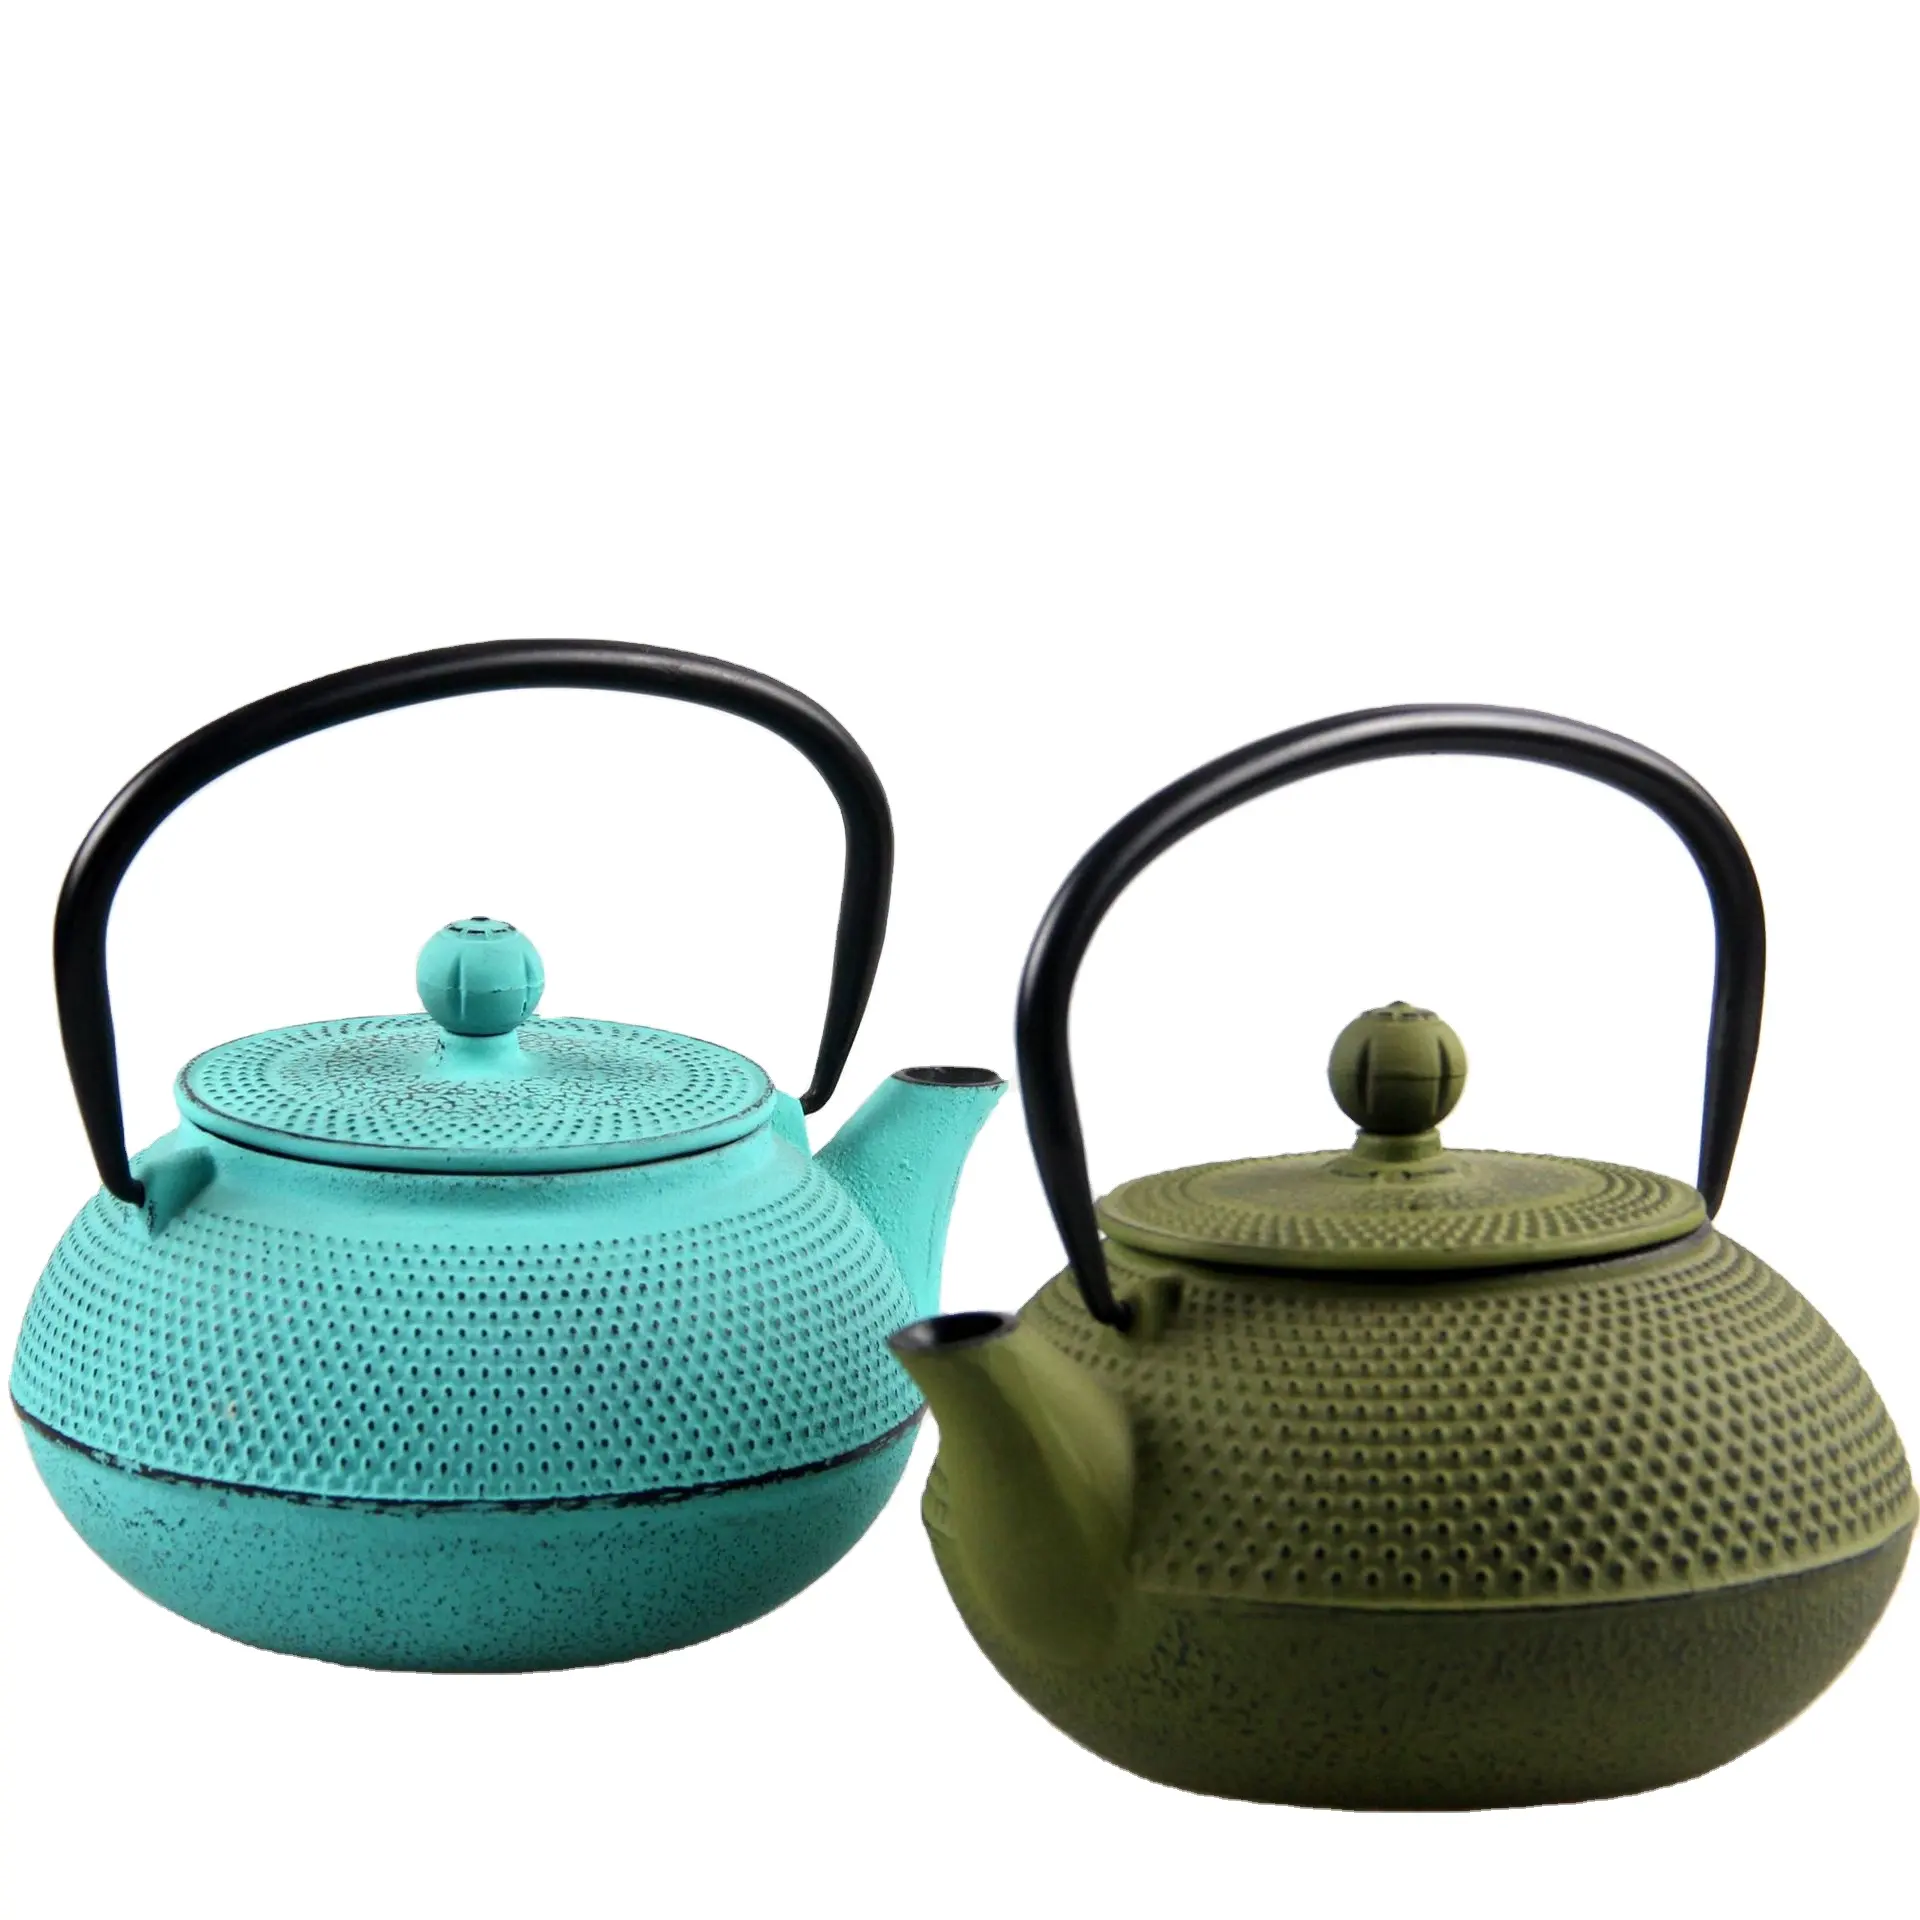 Teiera in ghisa bollitore da tè in stile giapponese con teiere in ferro blu smaltato interno rimovibile in acciaio inossidabile 34oz / 1000ml